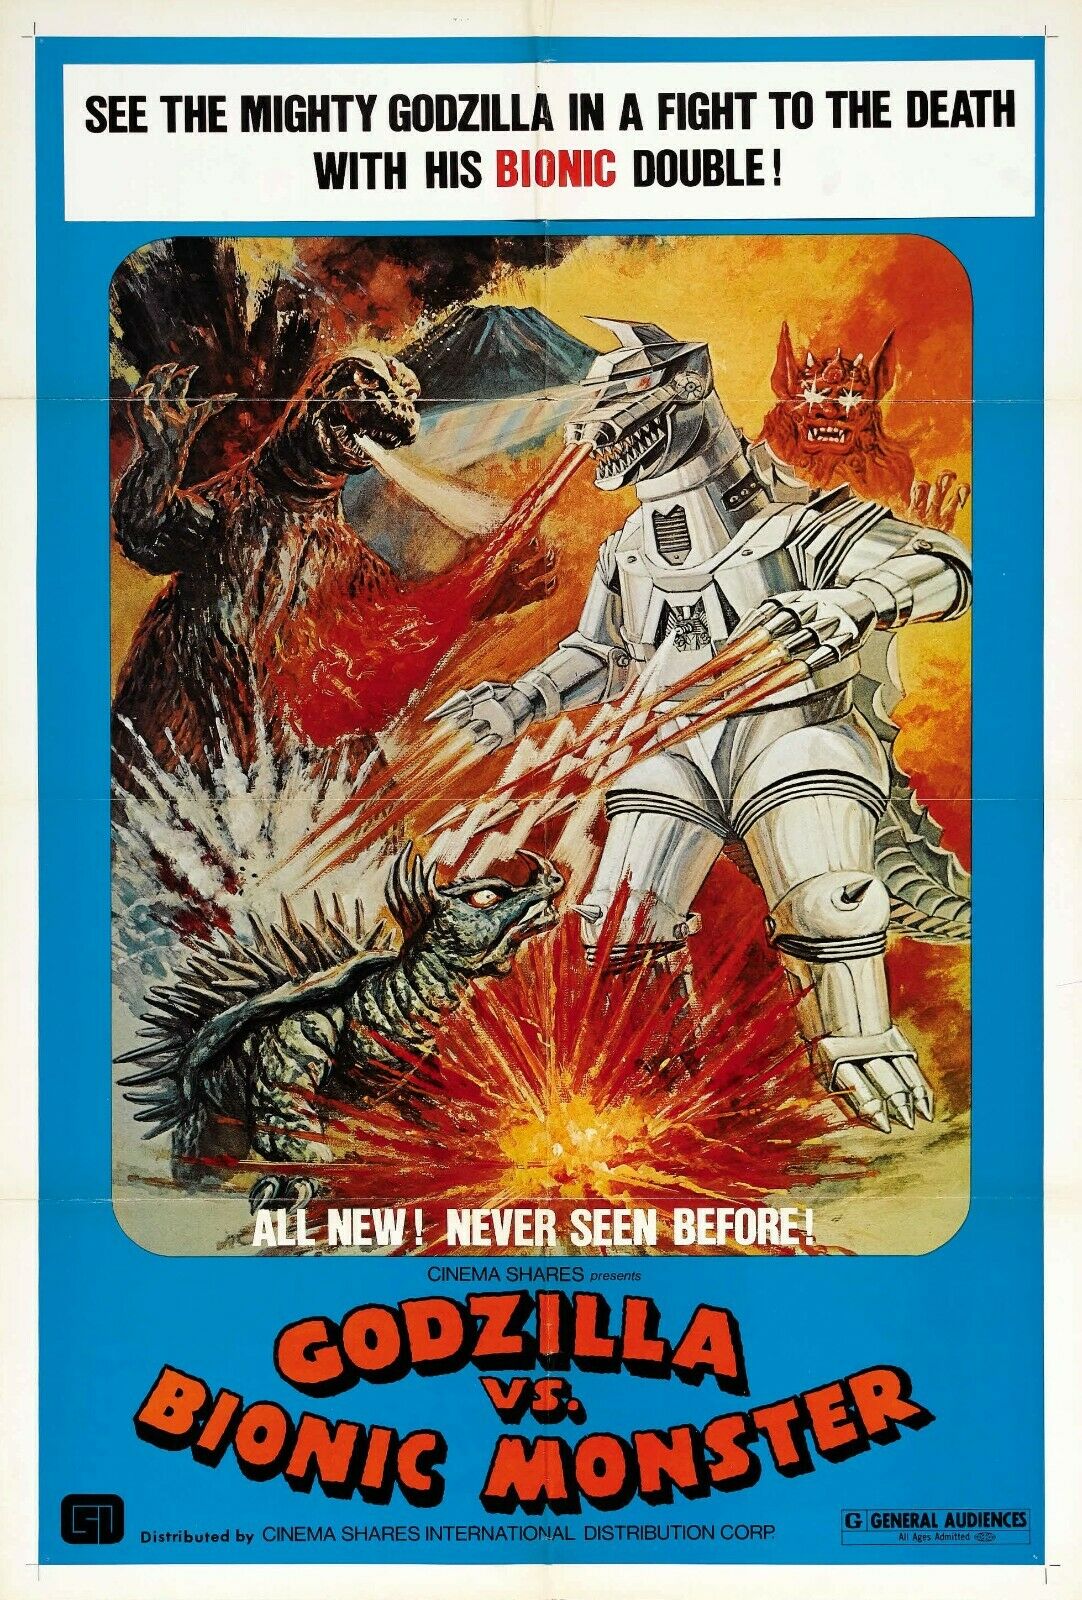 Godzilla Vs. Mechagodzilla (u.s.) -- Full-color Kaiju Action Poster!